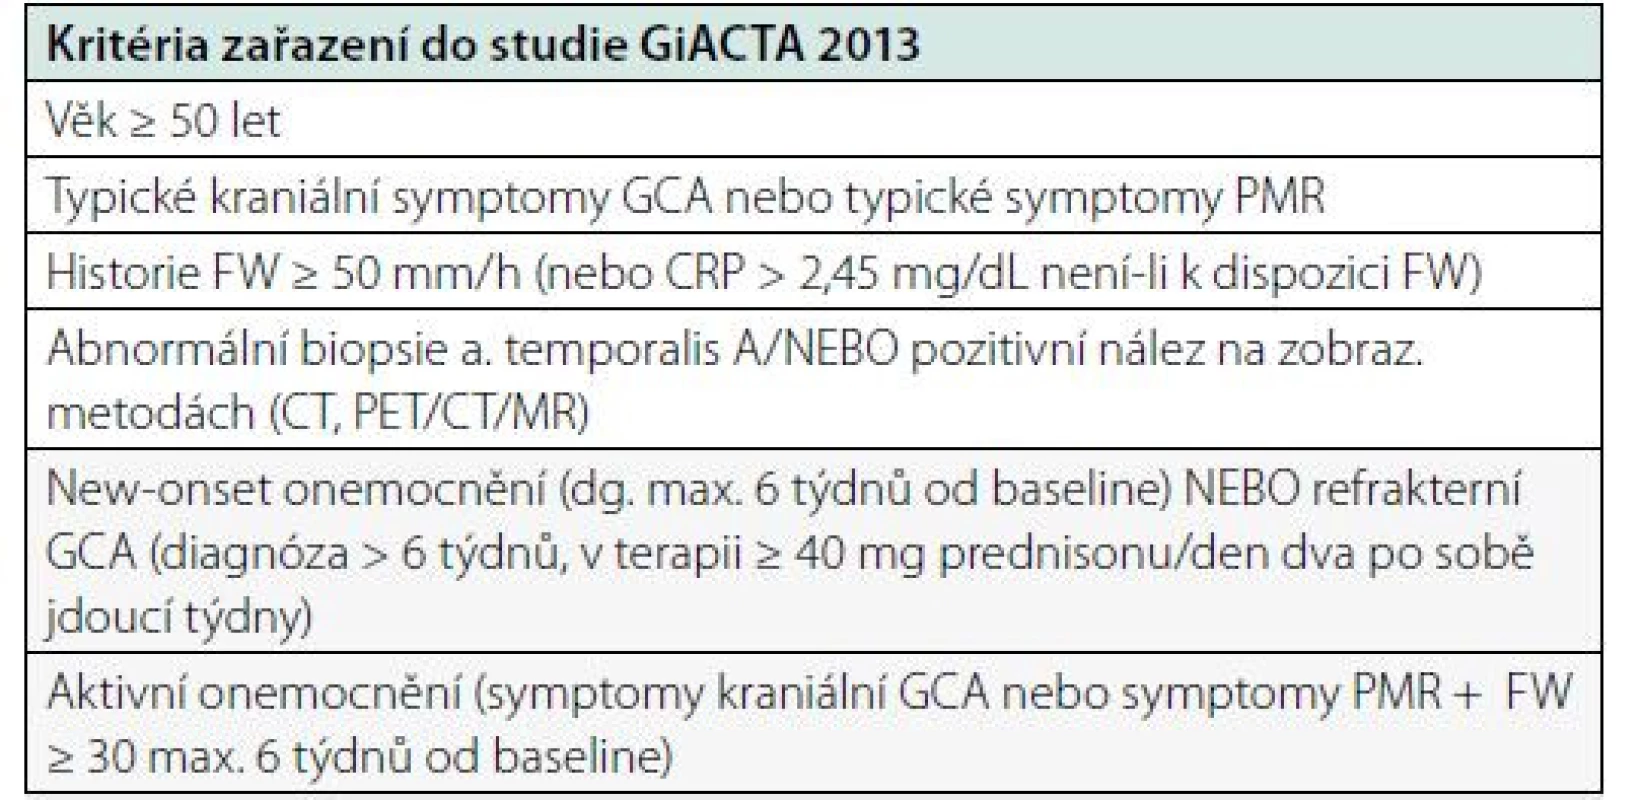 Vstupní kriteria pro zařazení do studie GiACTA 2013